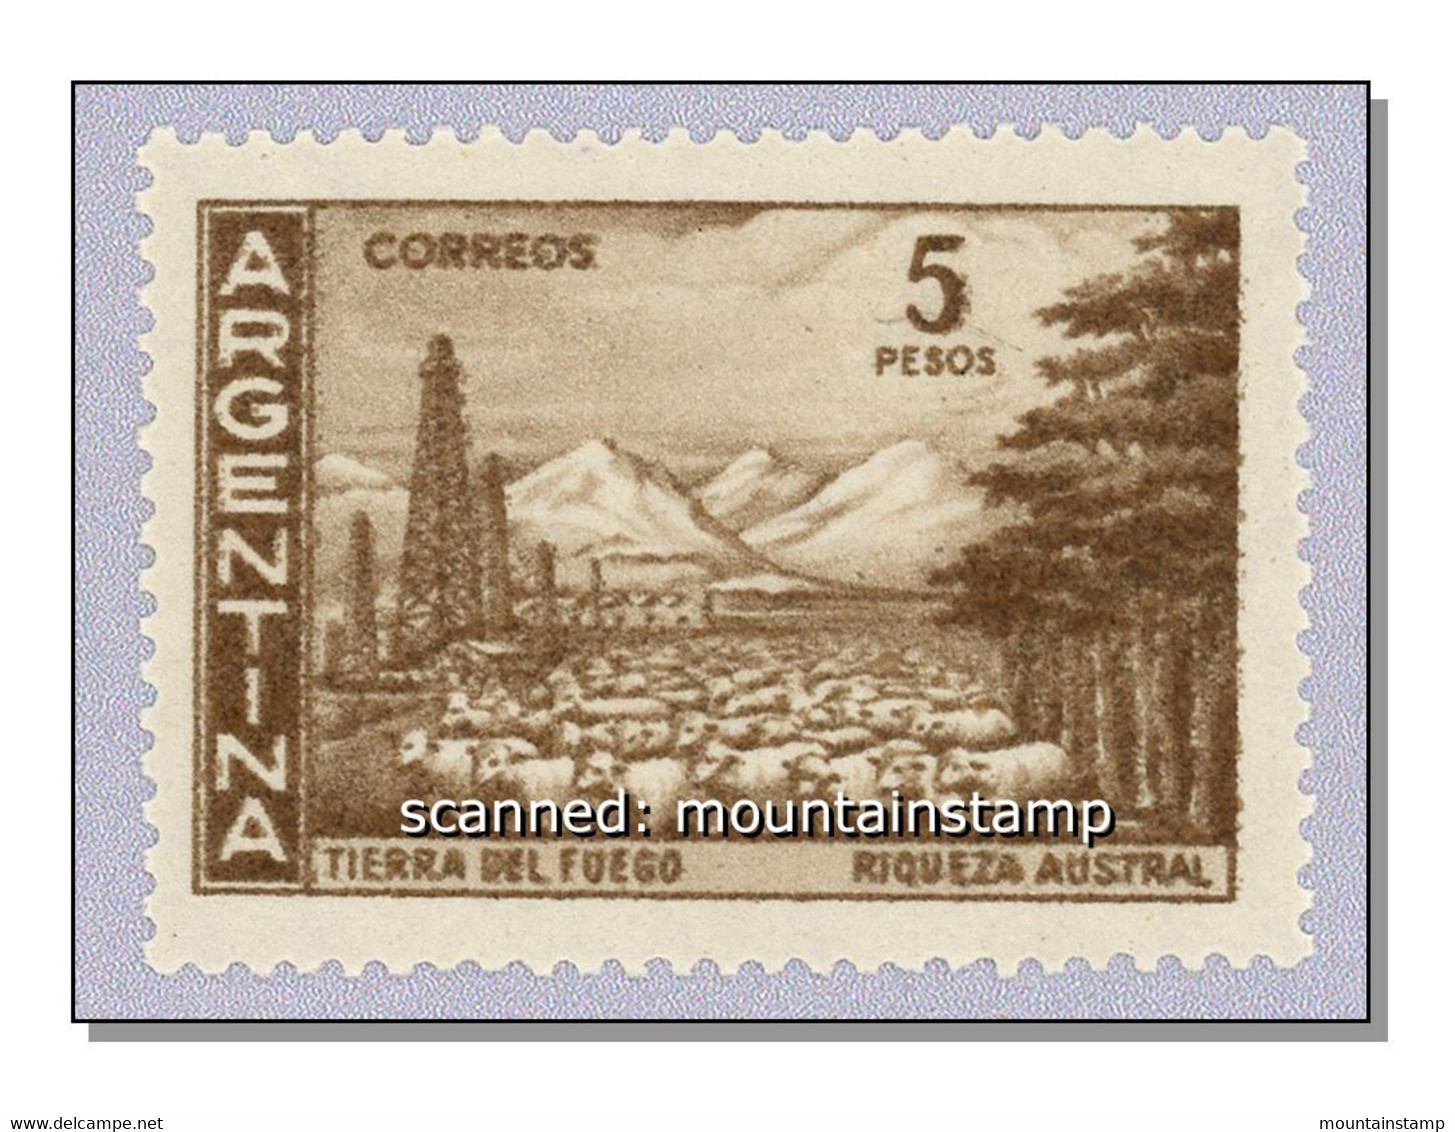 Argentina 1959 (B6) Tierra Del Fuego (Michel 703I) Mountains Berge Schafe Oil Field Sheeps  MNH ** - Ungebraucht